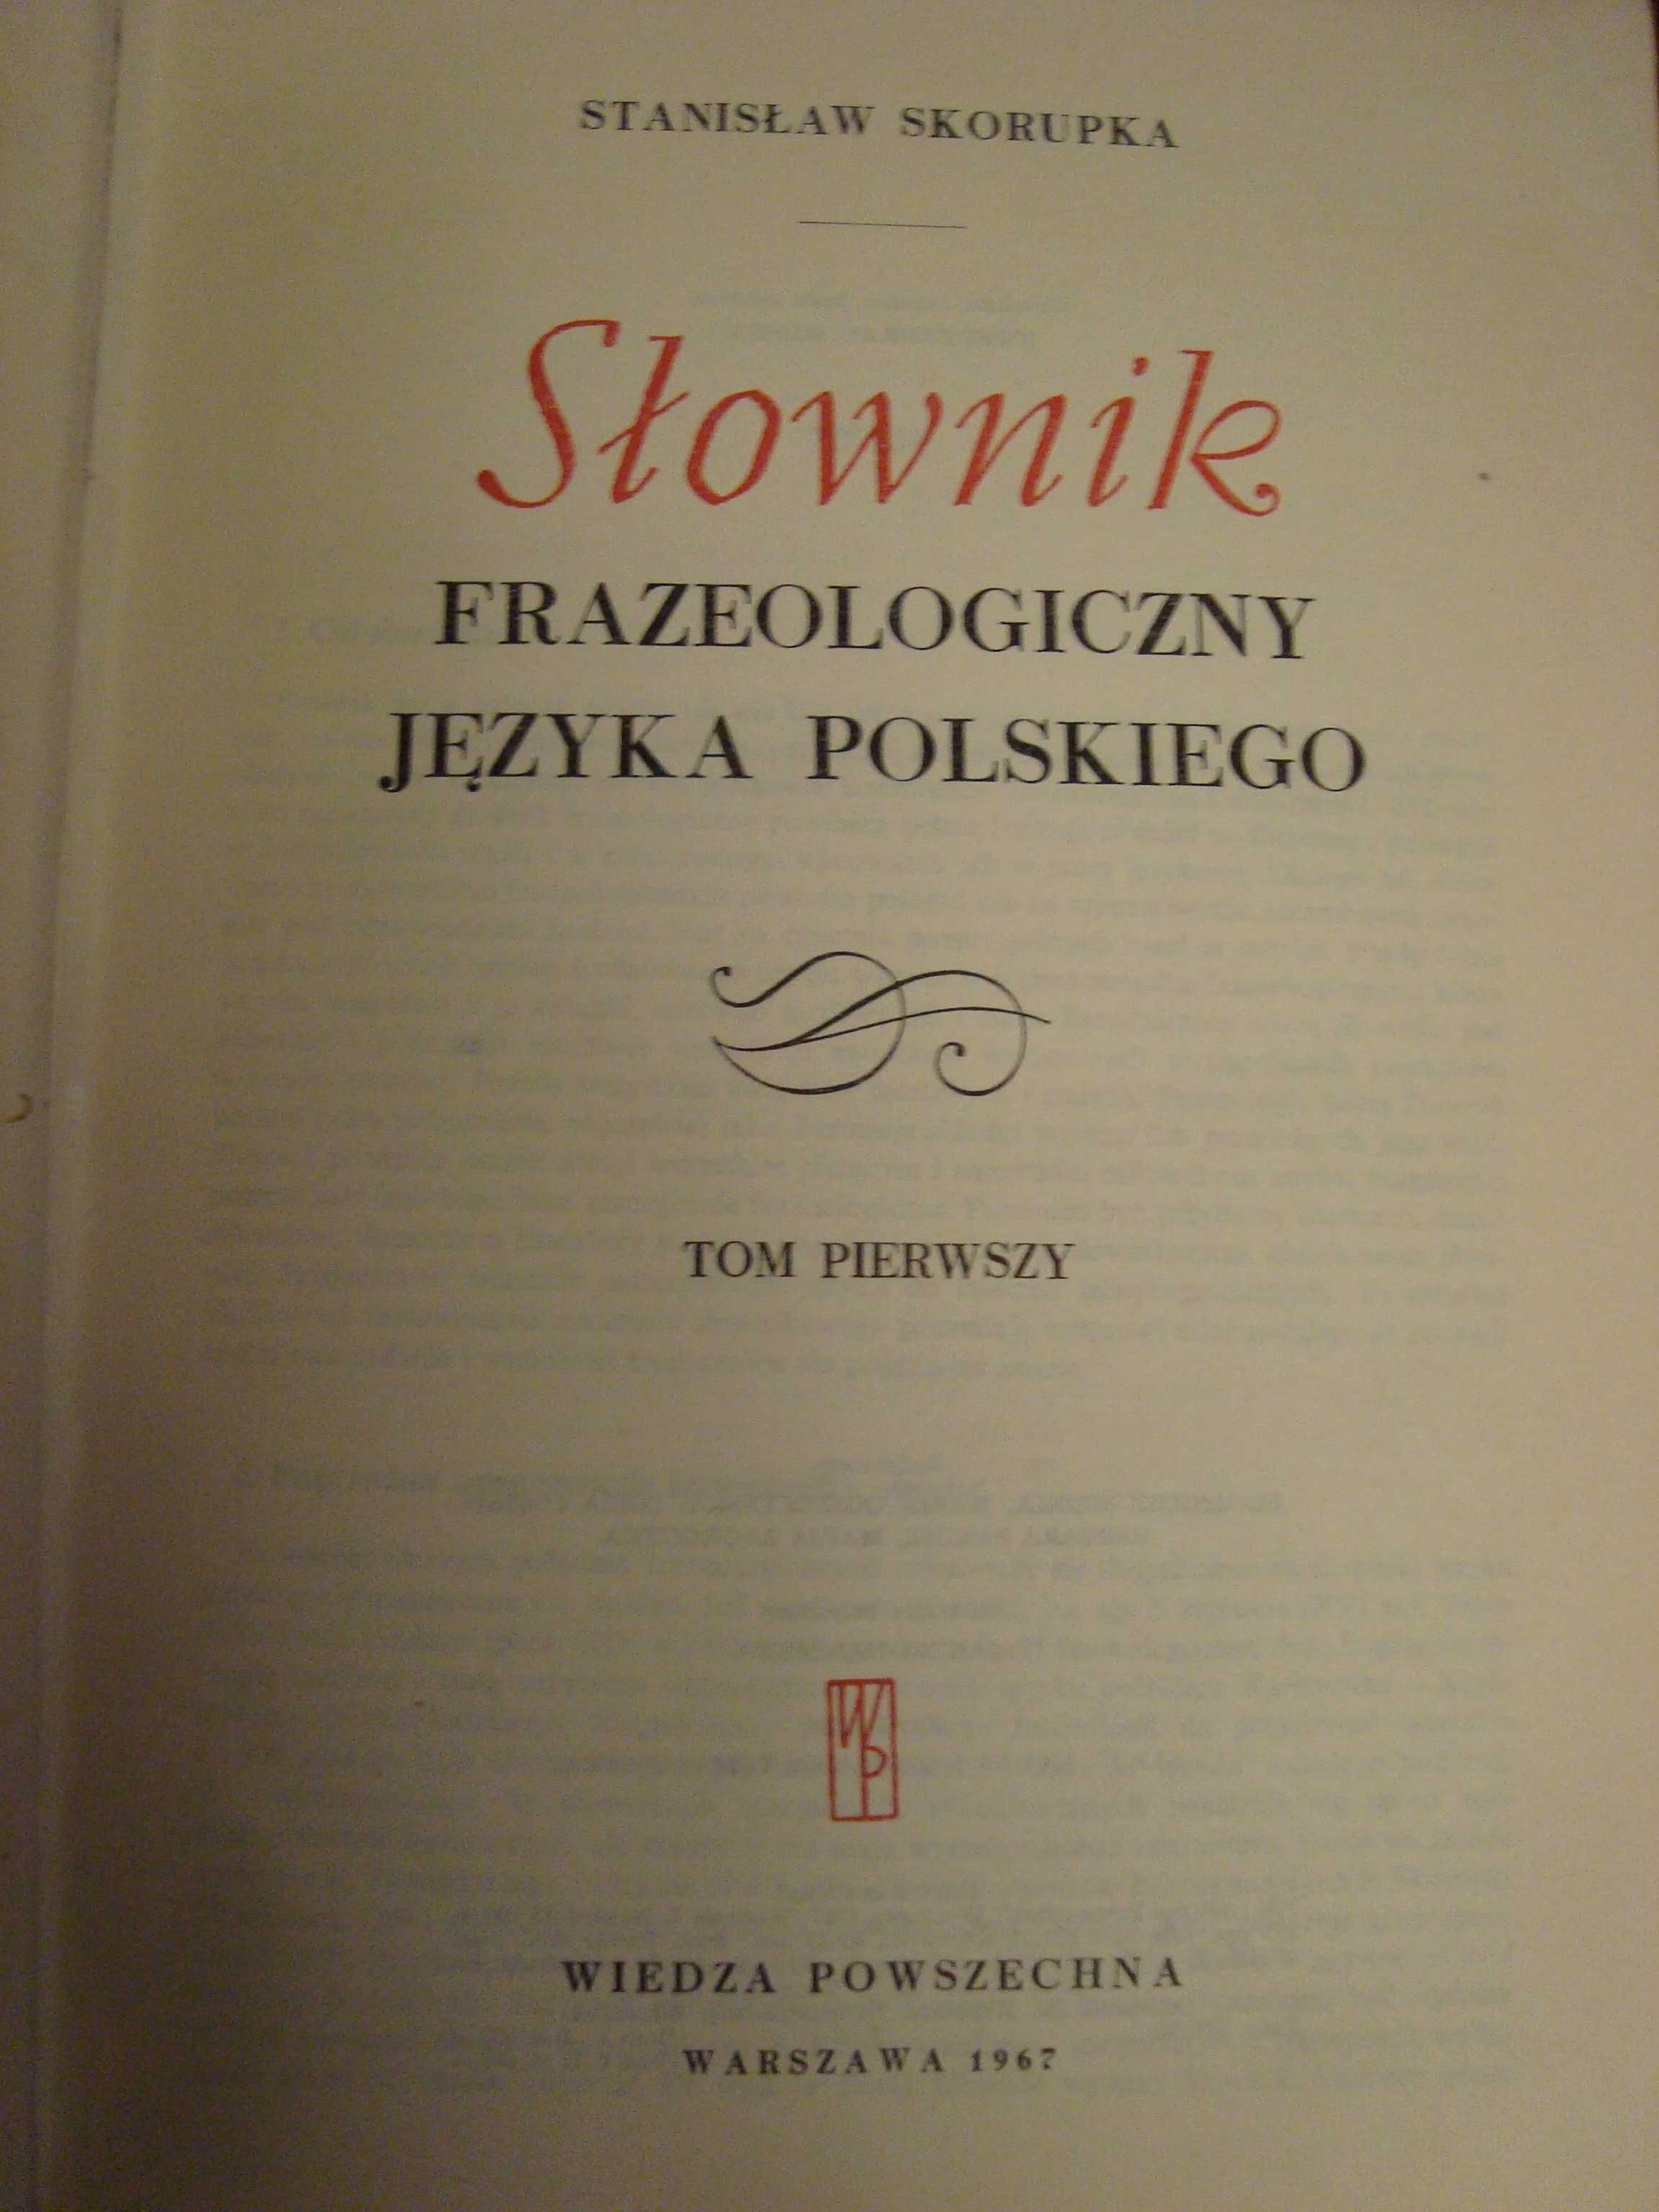 stanisław skorupka słownik frazeologiczny 1 i 2 tom